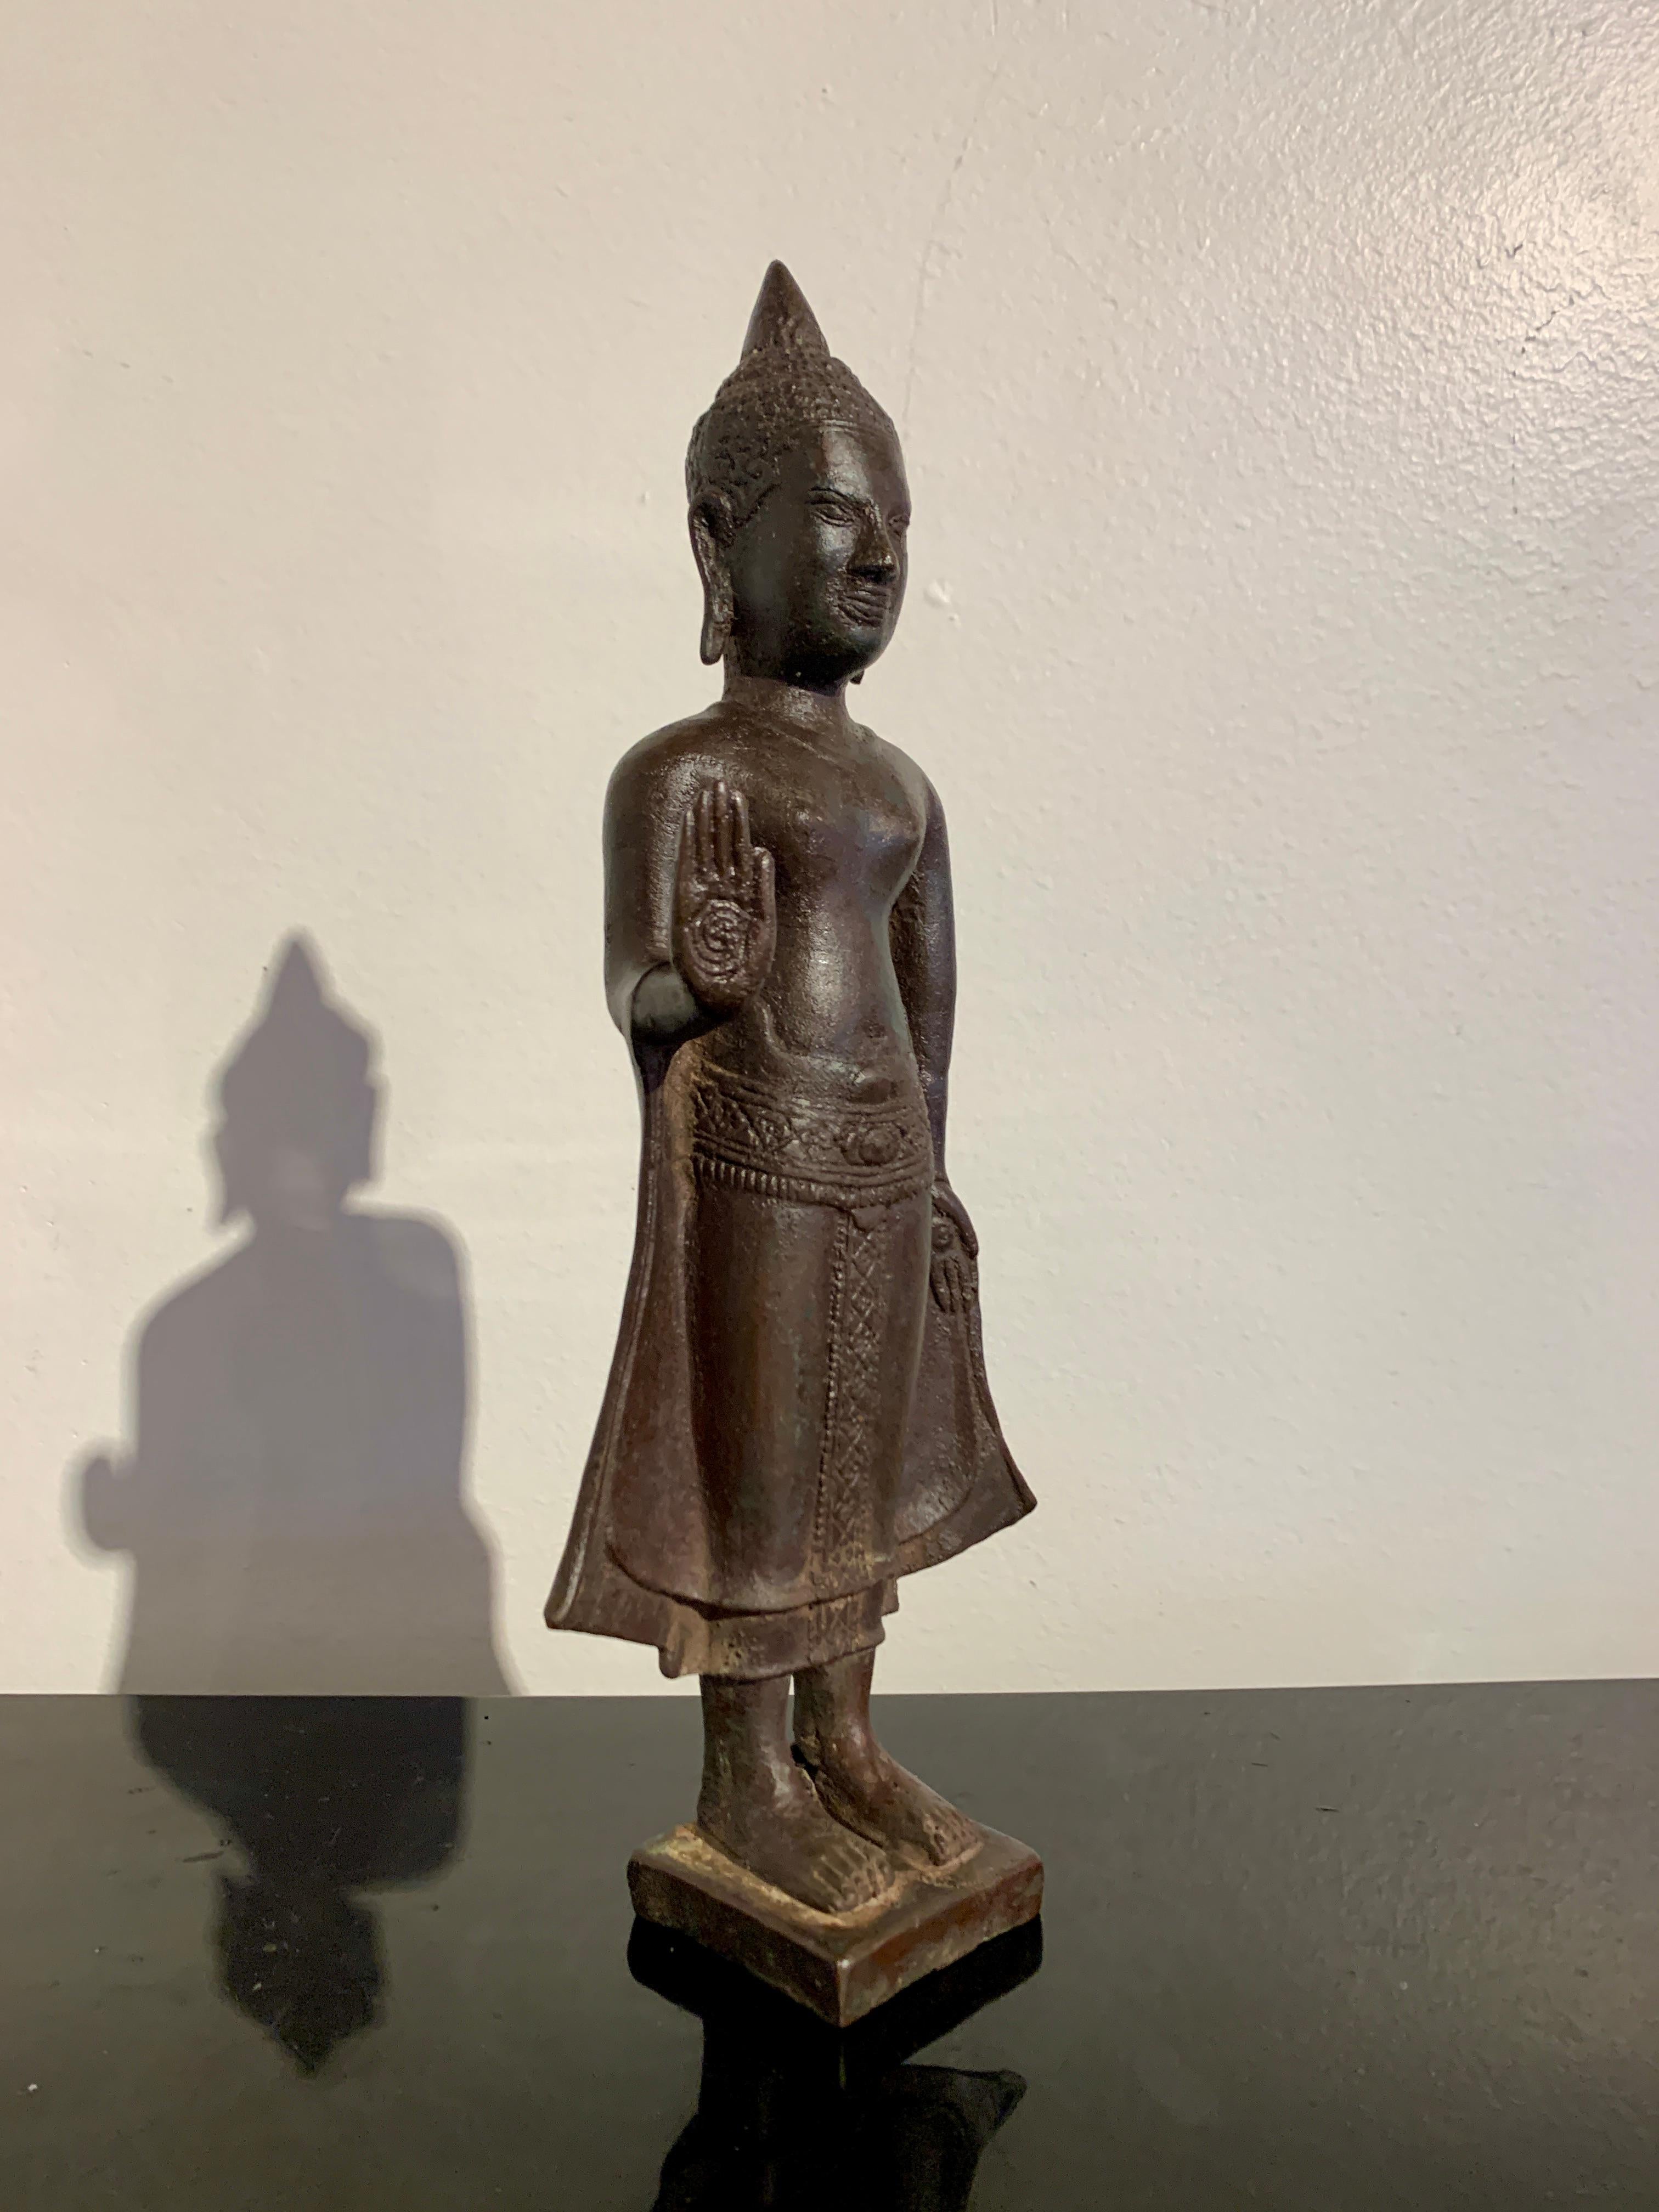 Une belle figure de style khmer vintage en bronze moulé et patiné d'un Bouddha debout, milieu du 20e siècle, Thaïlande ou Cambodge. 

Le Bouddha est représenté debout sur un socle carré, bas et uni. Il est vêtu d'un dhoti avec des ourlets décorés,